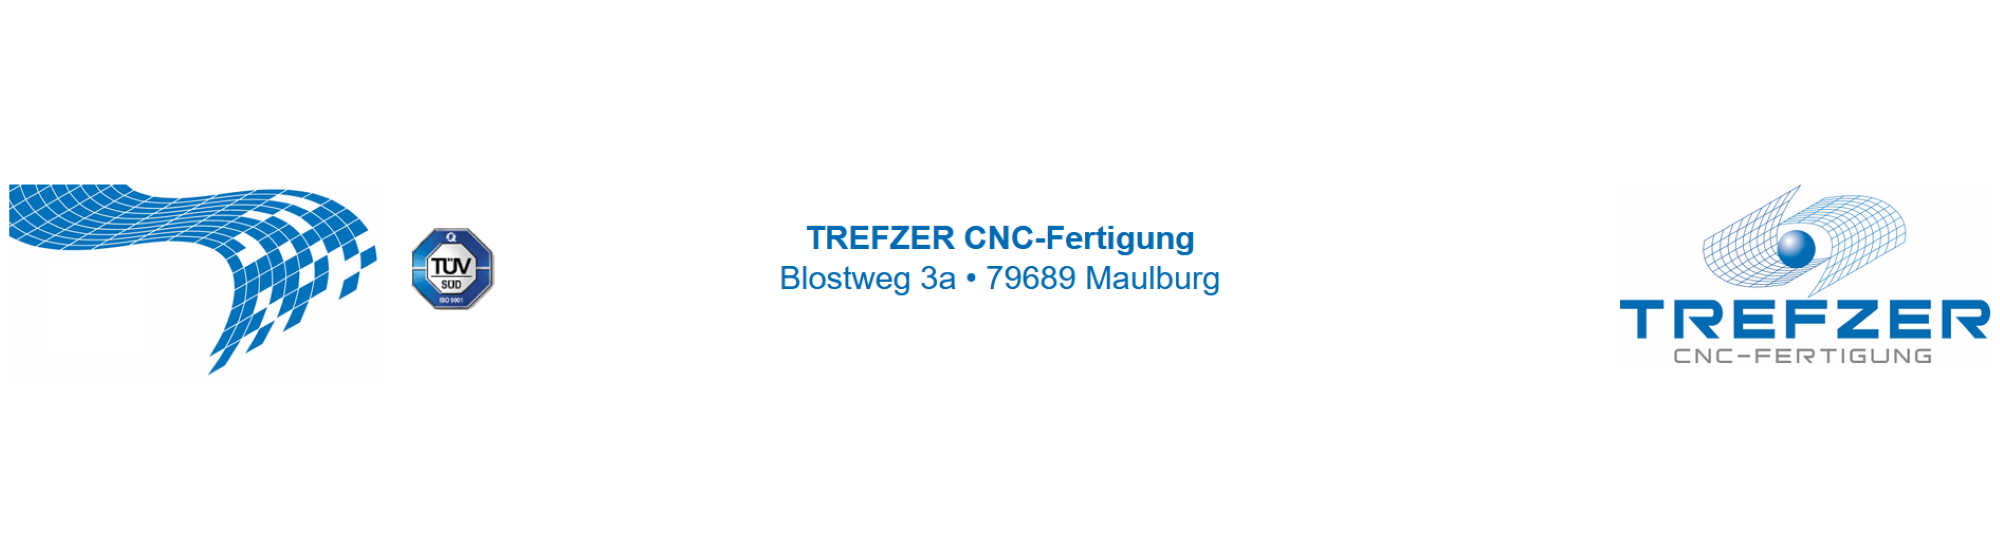 TREFZER CNC-Fertigung Inhaber Dieter Trefzer e.K.